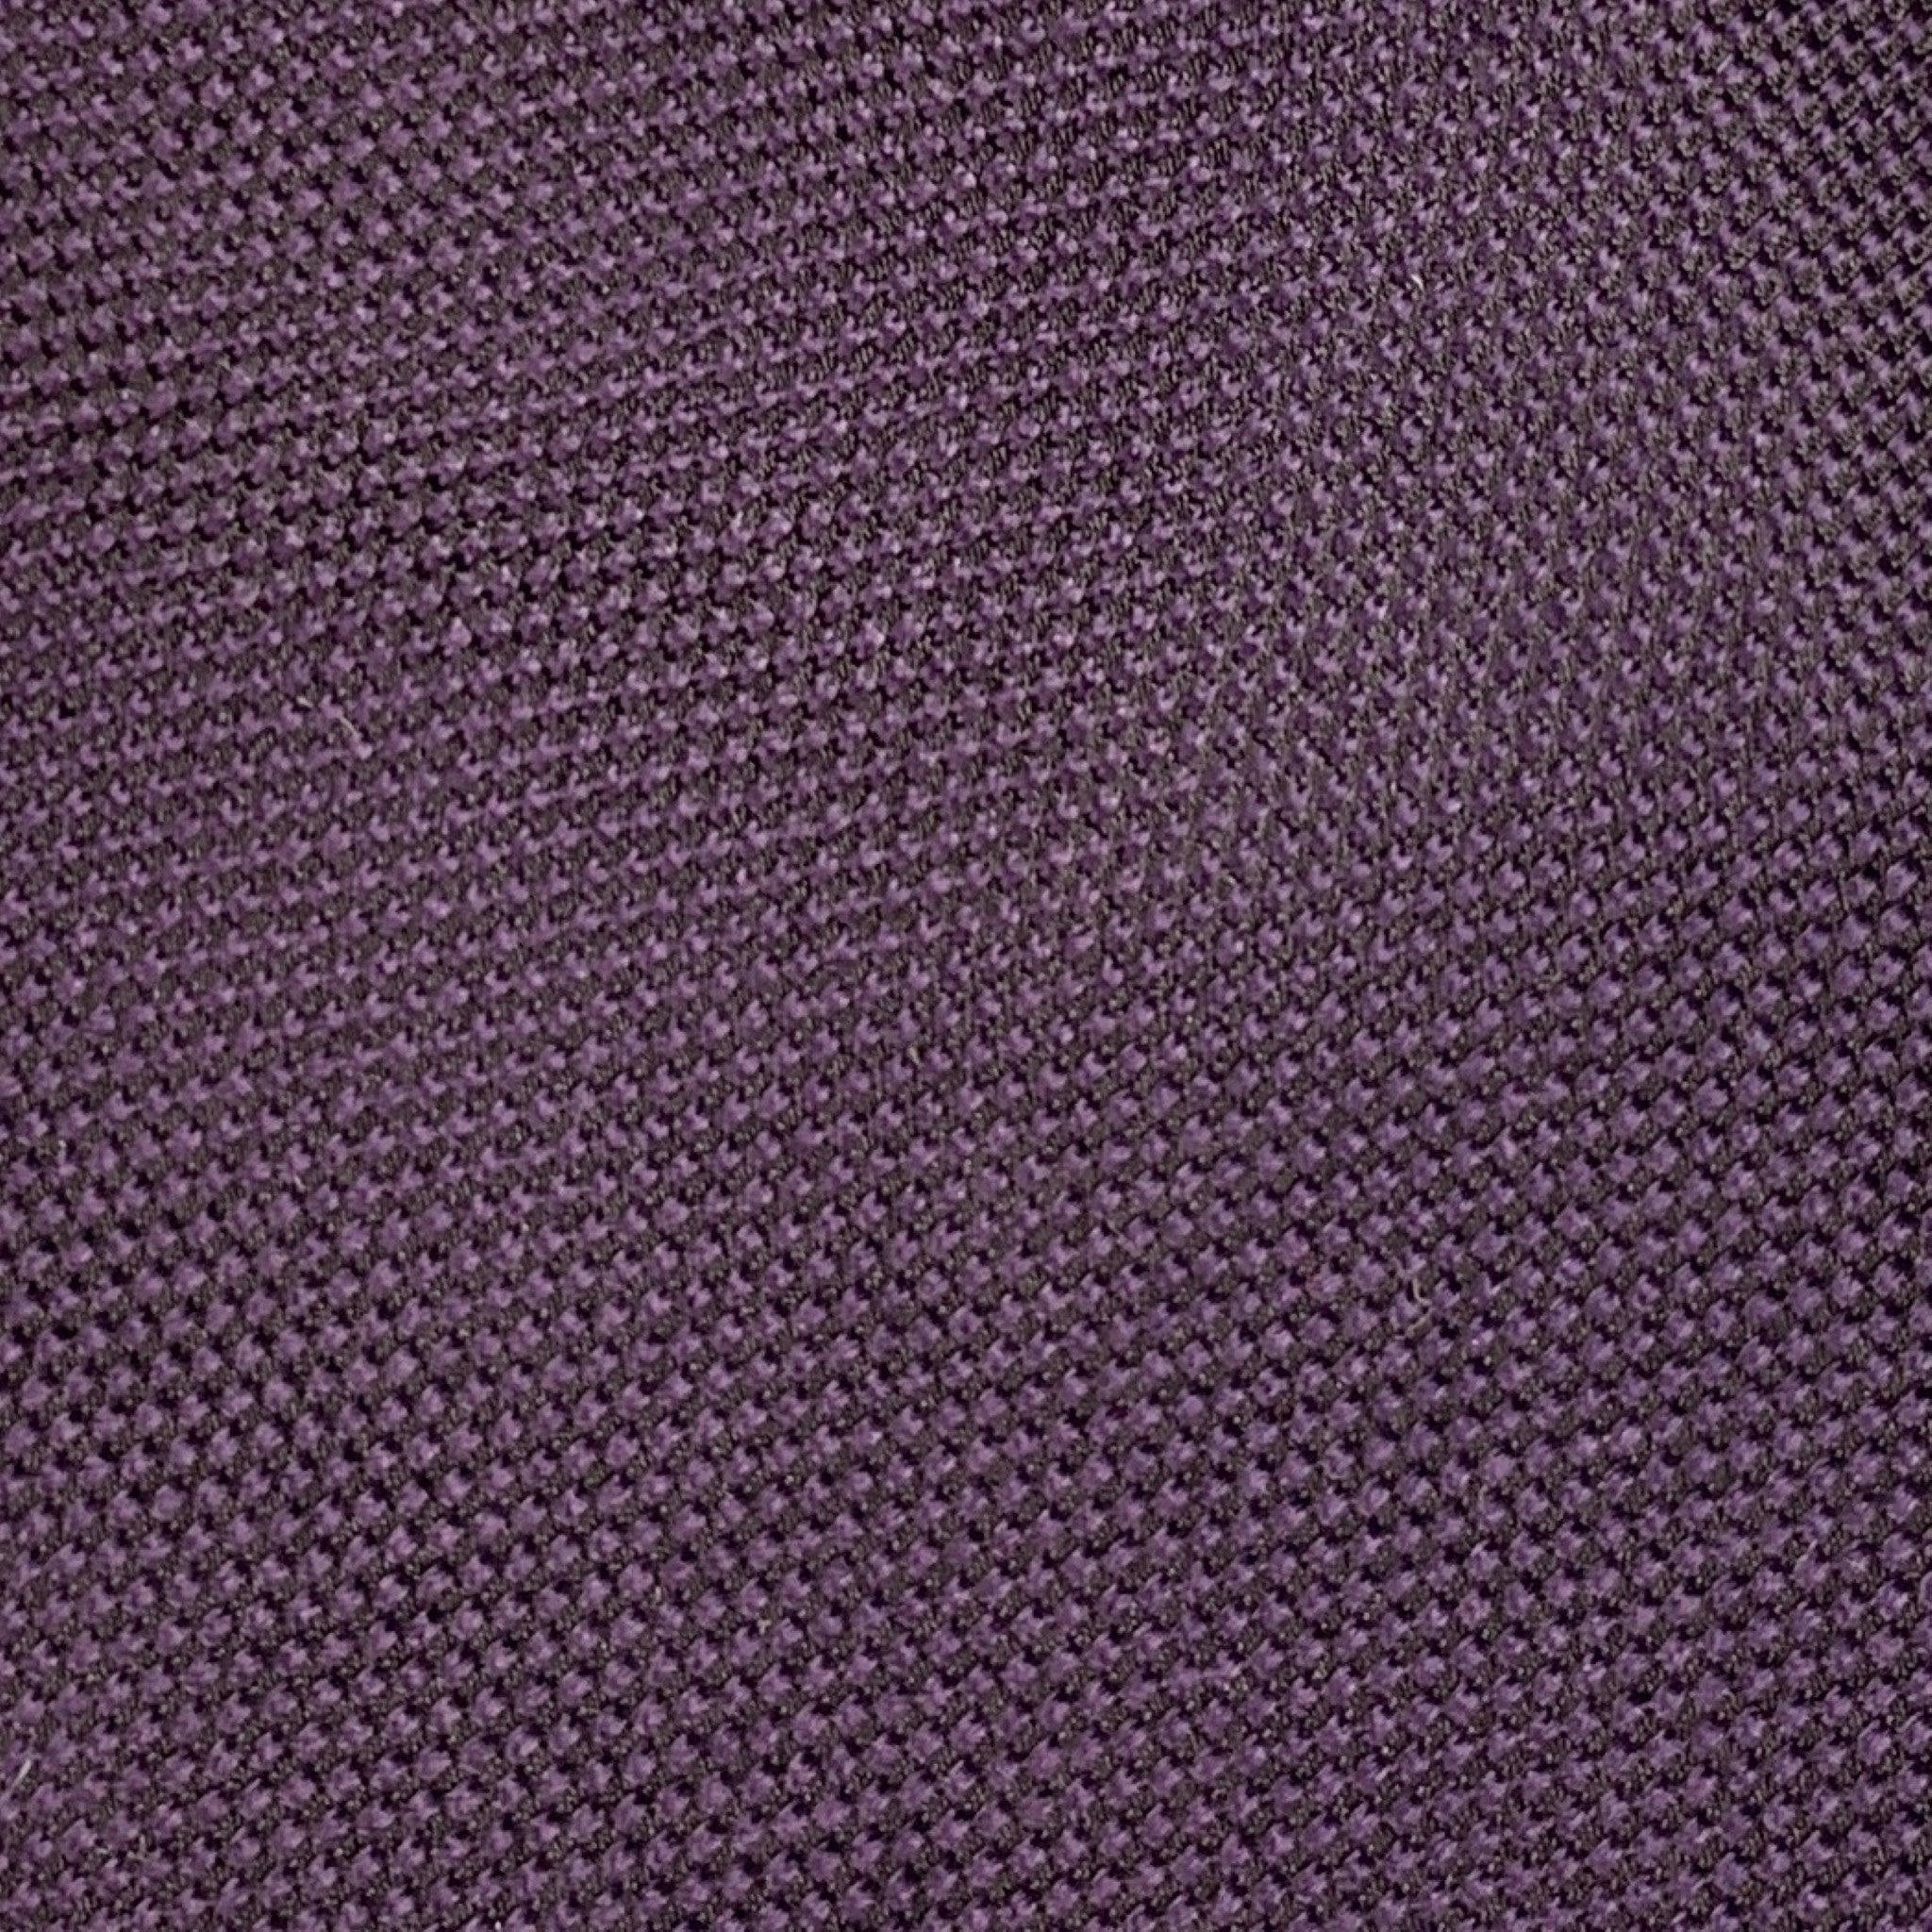 GIORGIO ARMANI Purple Black Textured Silk Tie In Excellent Condition For Sale In San Francisco, CA